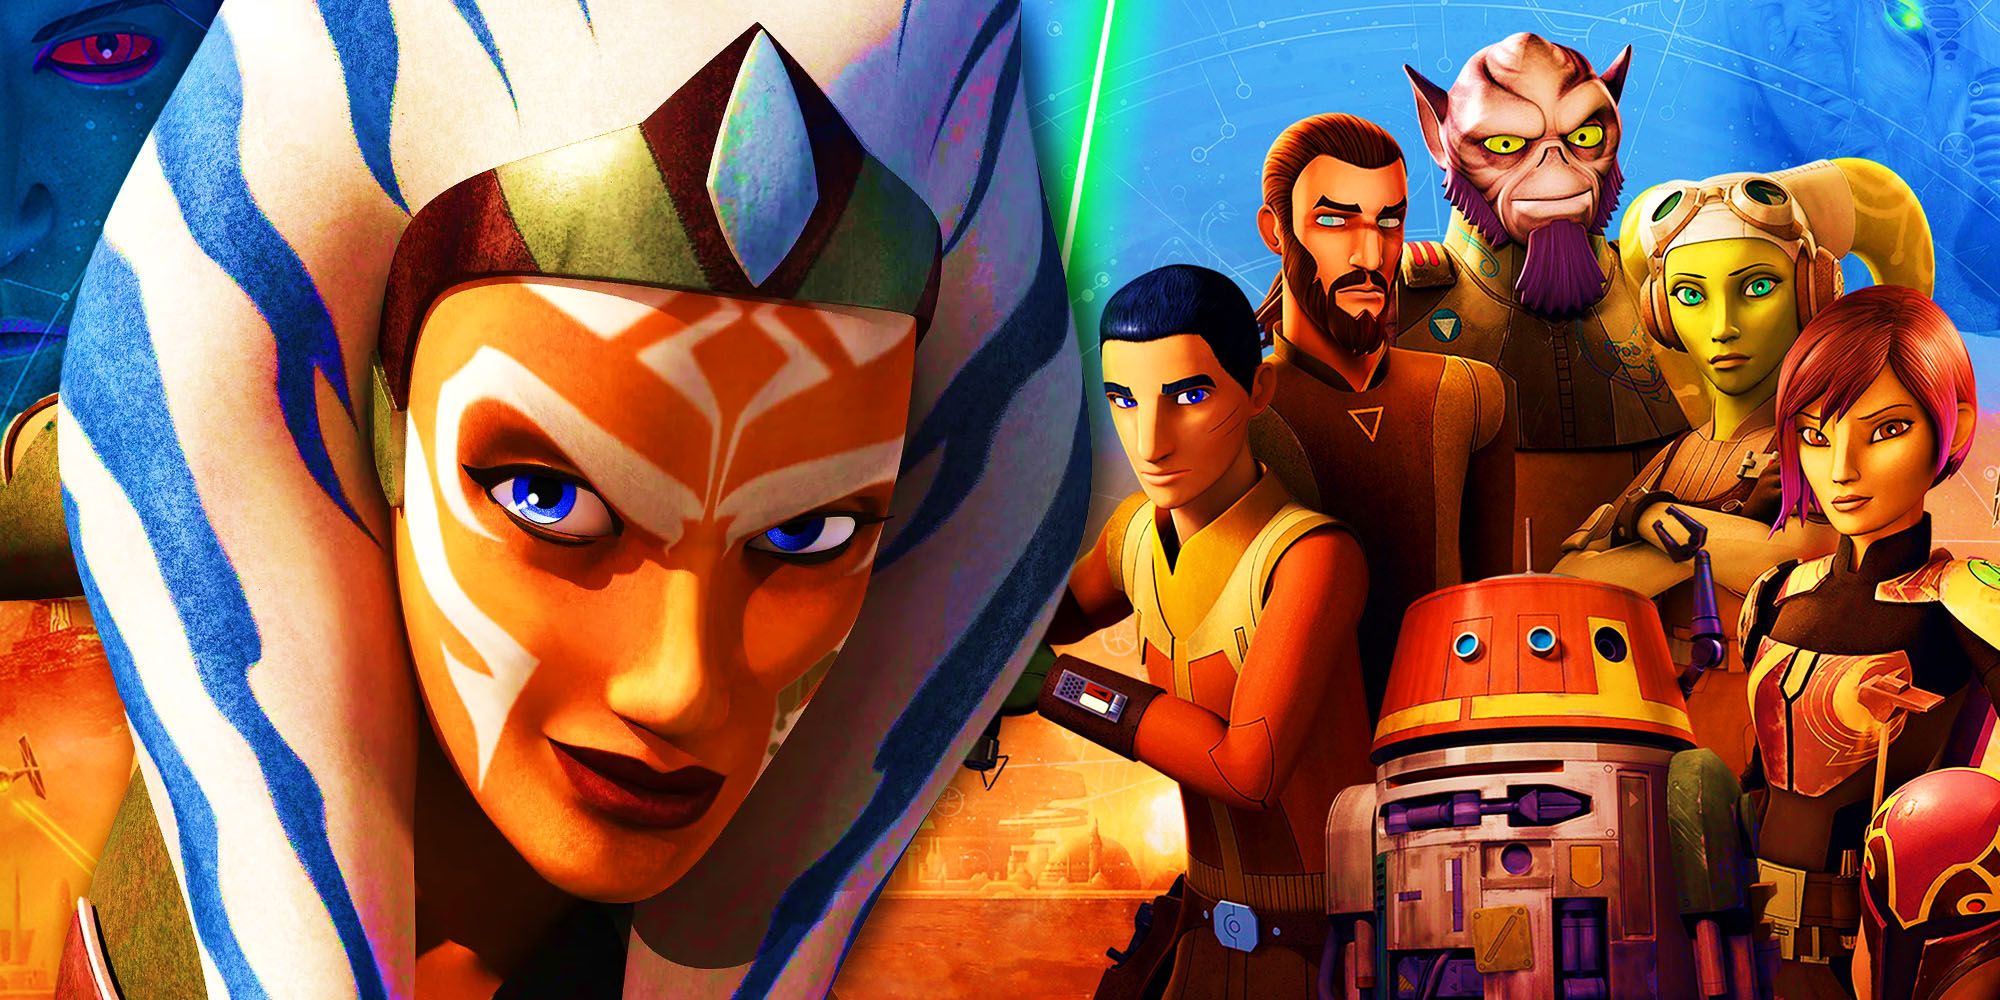 Dos héroes de Star Wars Rebels se unen contra el Imperio en una increíble celebración de cosplay